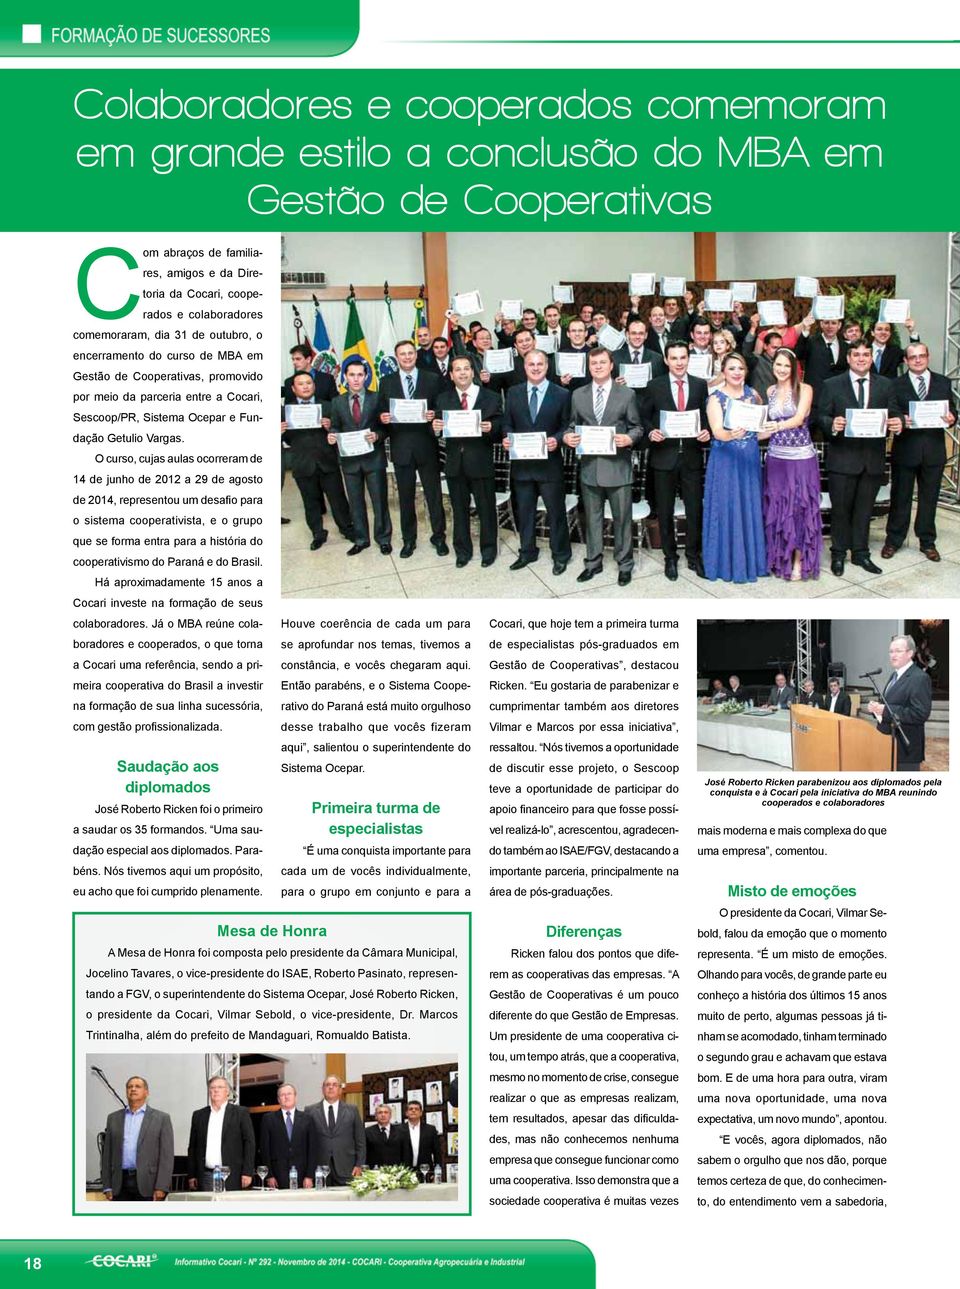 O curso, cujas aulas ocorreram de 14 de junho de 2012 a 29 de agosto de 2014, representou um desafio para o sistema cooperativista, e o grupo que se forma entra para a história do cooperativismo do